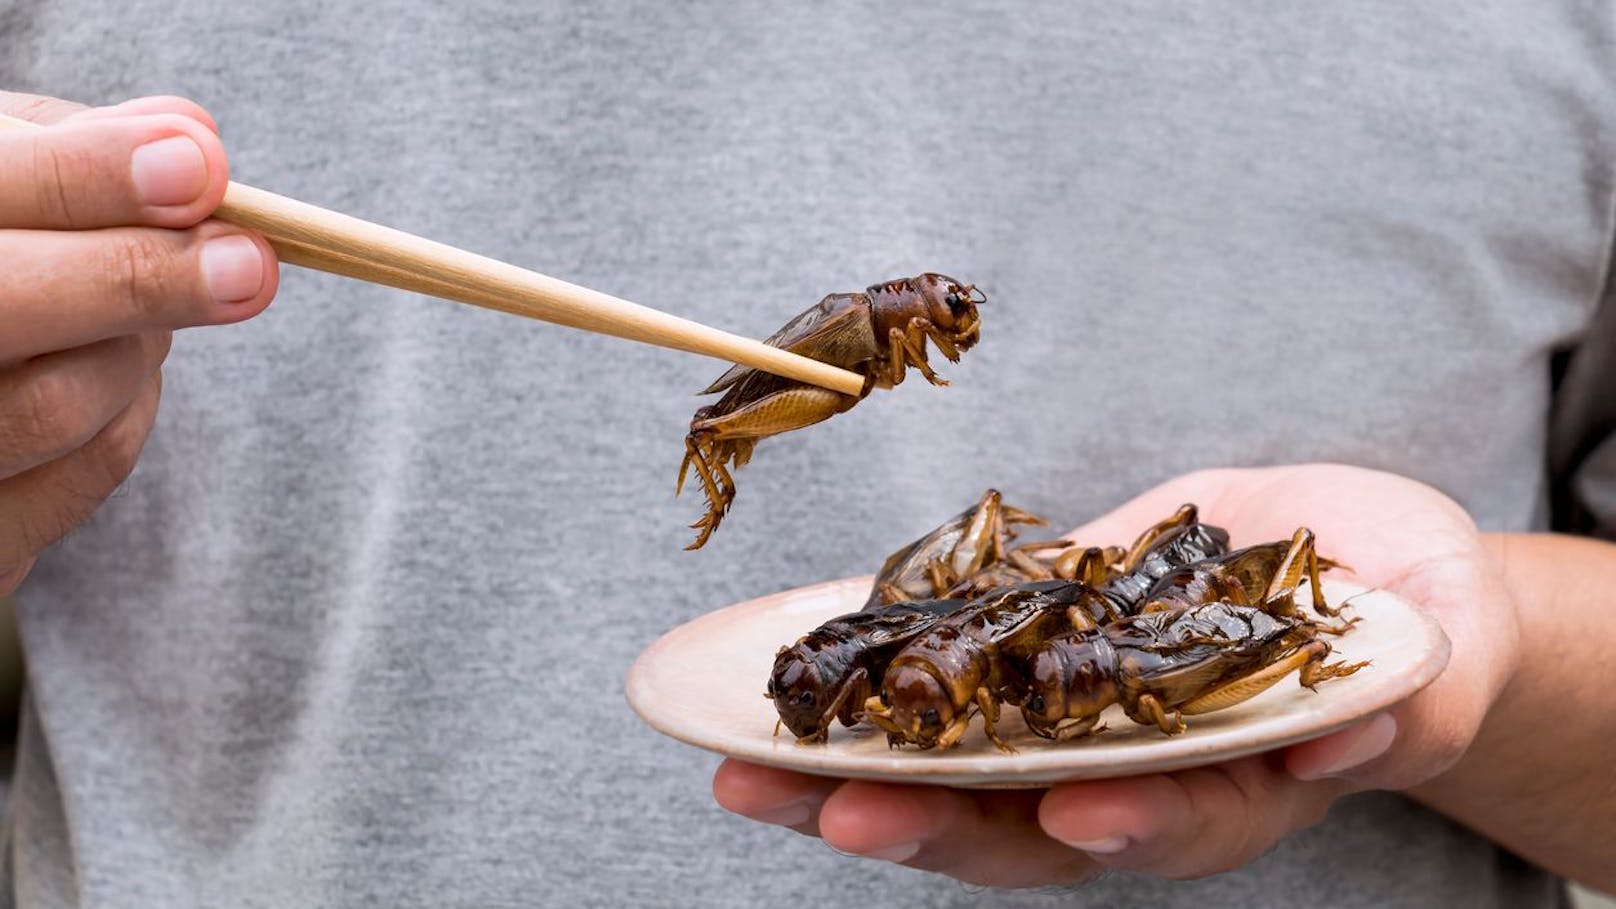 Dieses Land hat 16 Insekten als Lebensmittel zugelassen